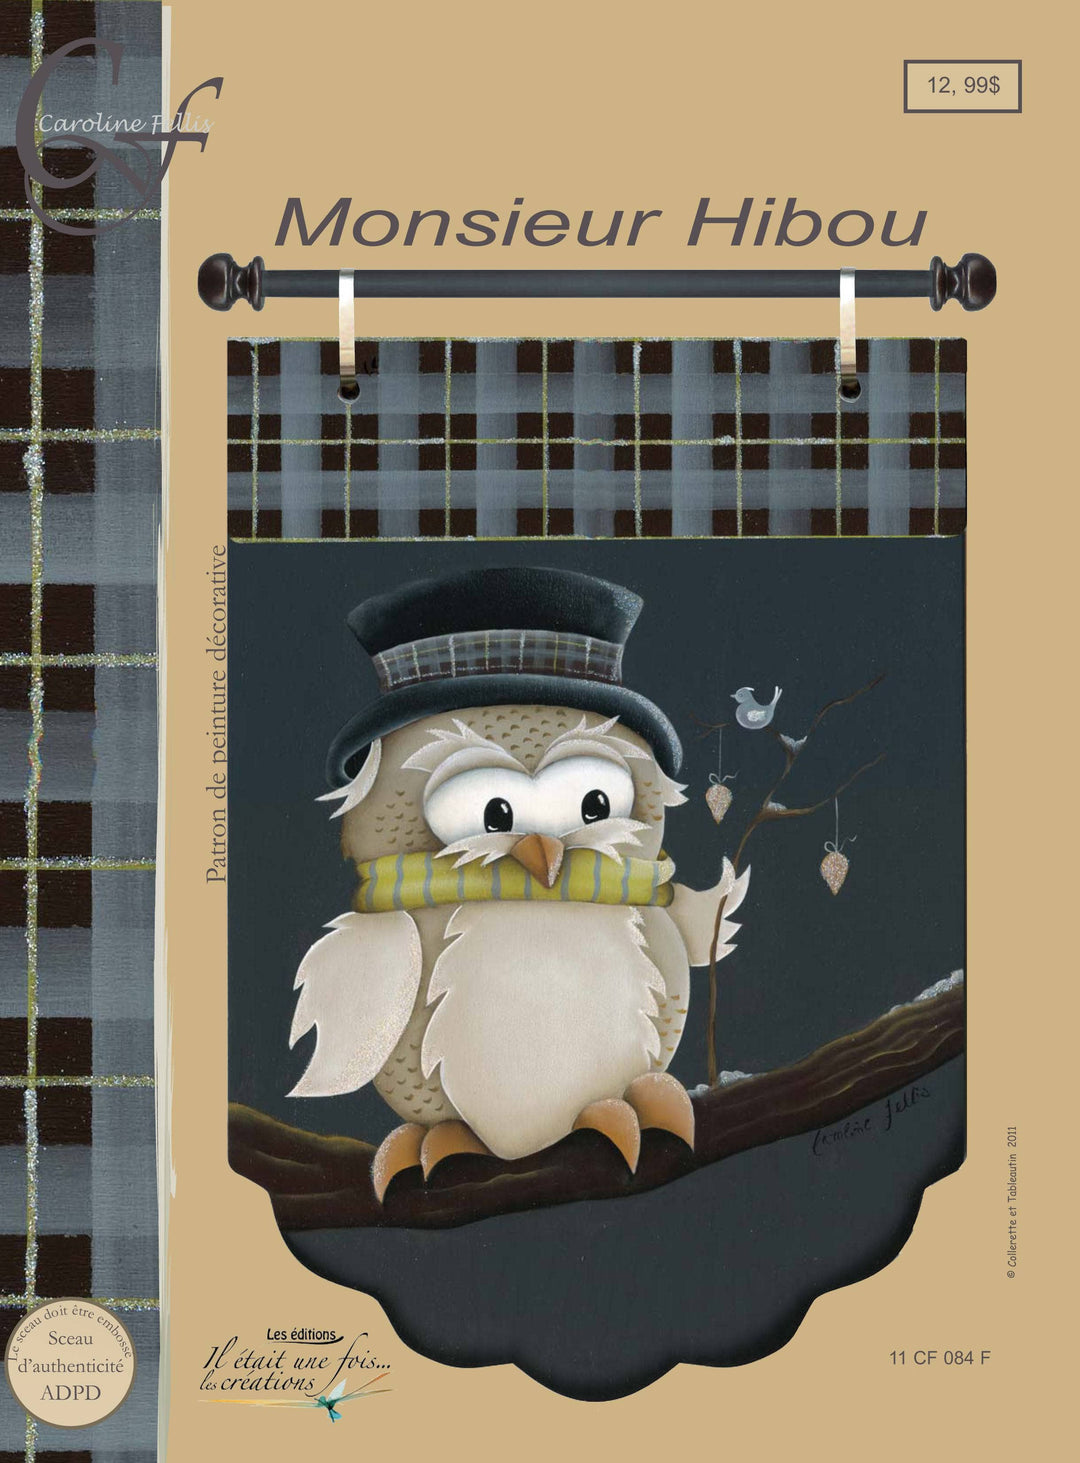 Monsieur hibou/C.Fellis